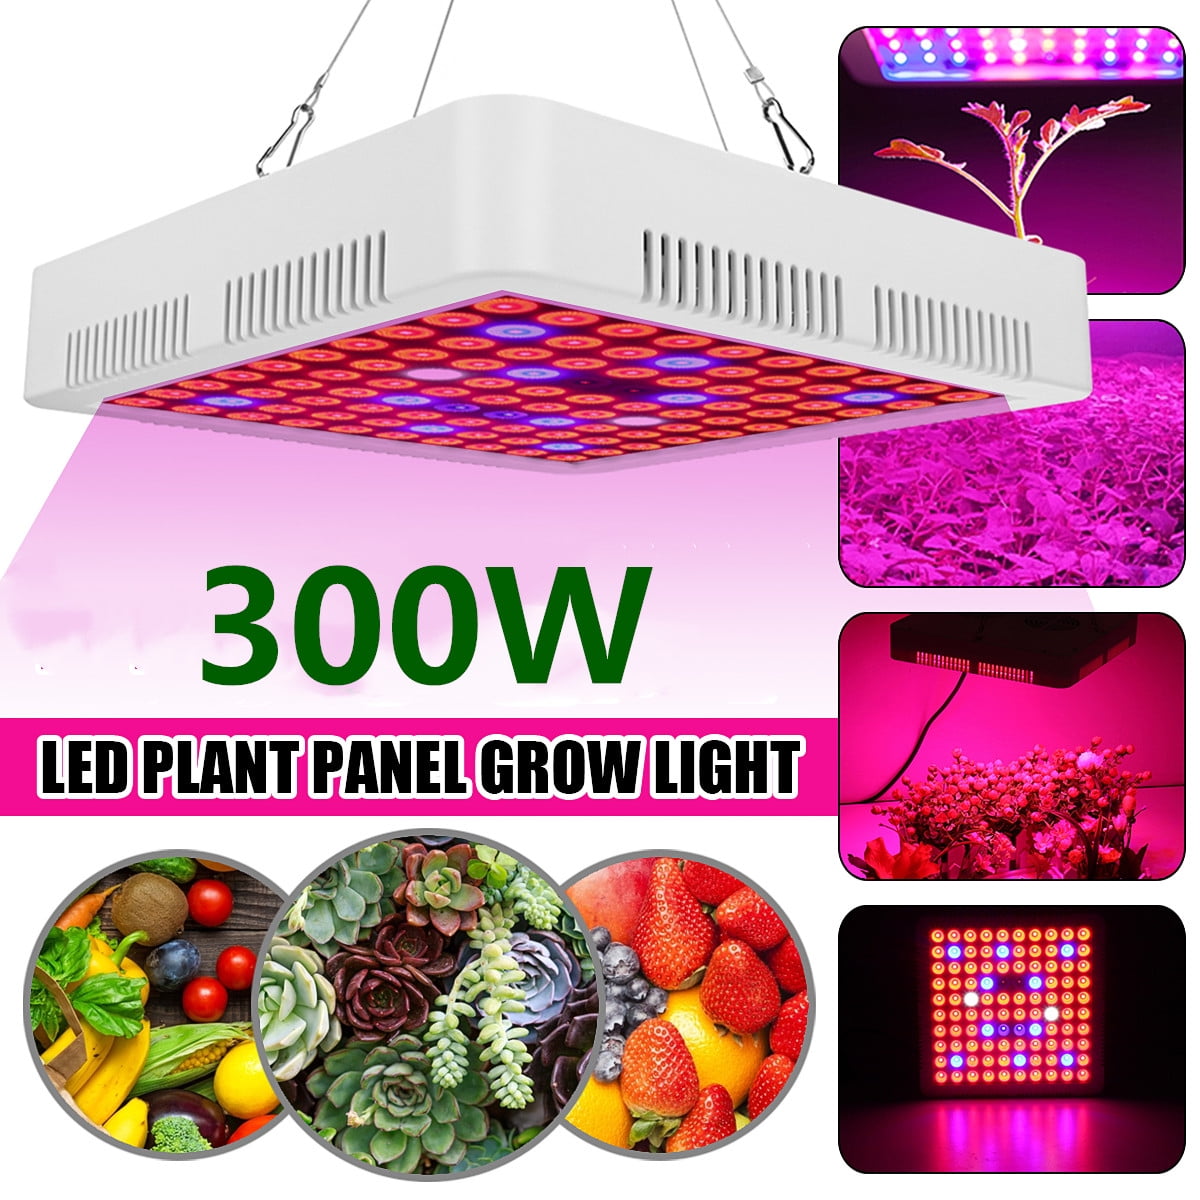 iPower 300W 100 LEDs Grow Light Full Spectrum Veg Flower Indoor Plant Lamp Panel 